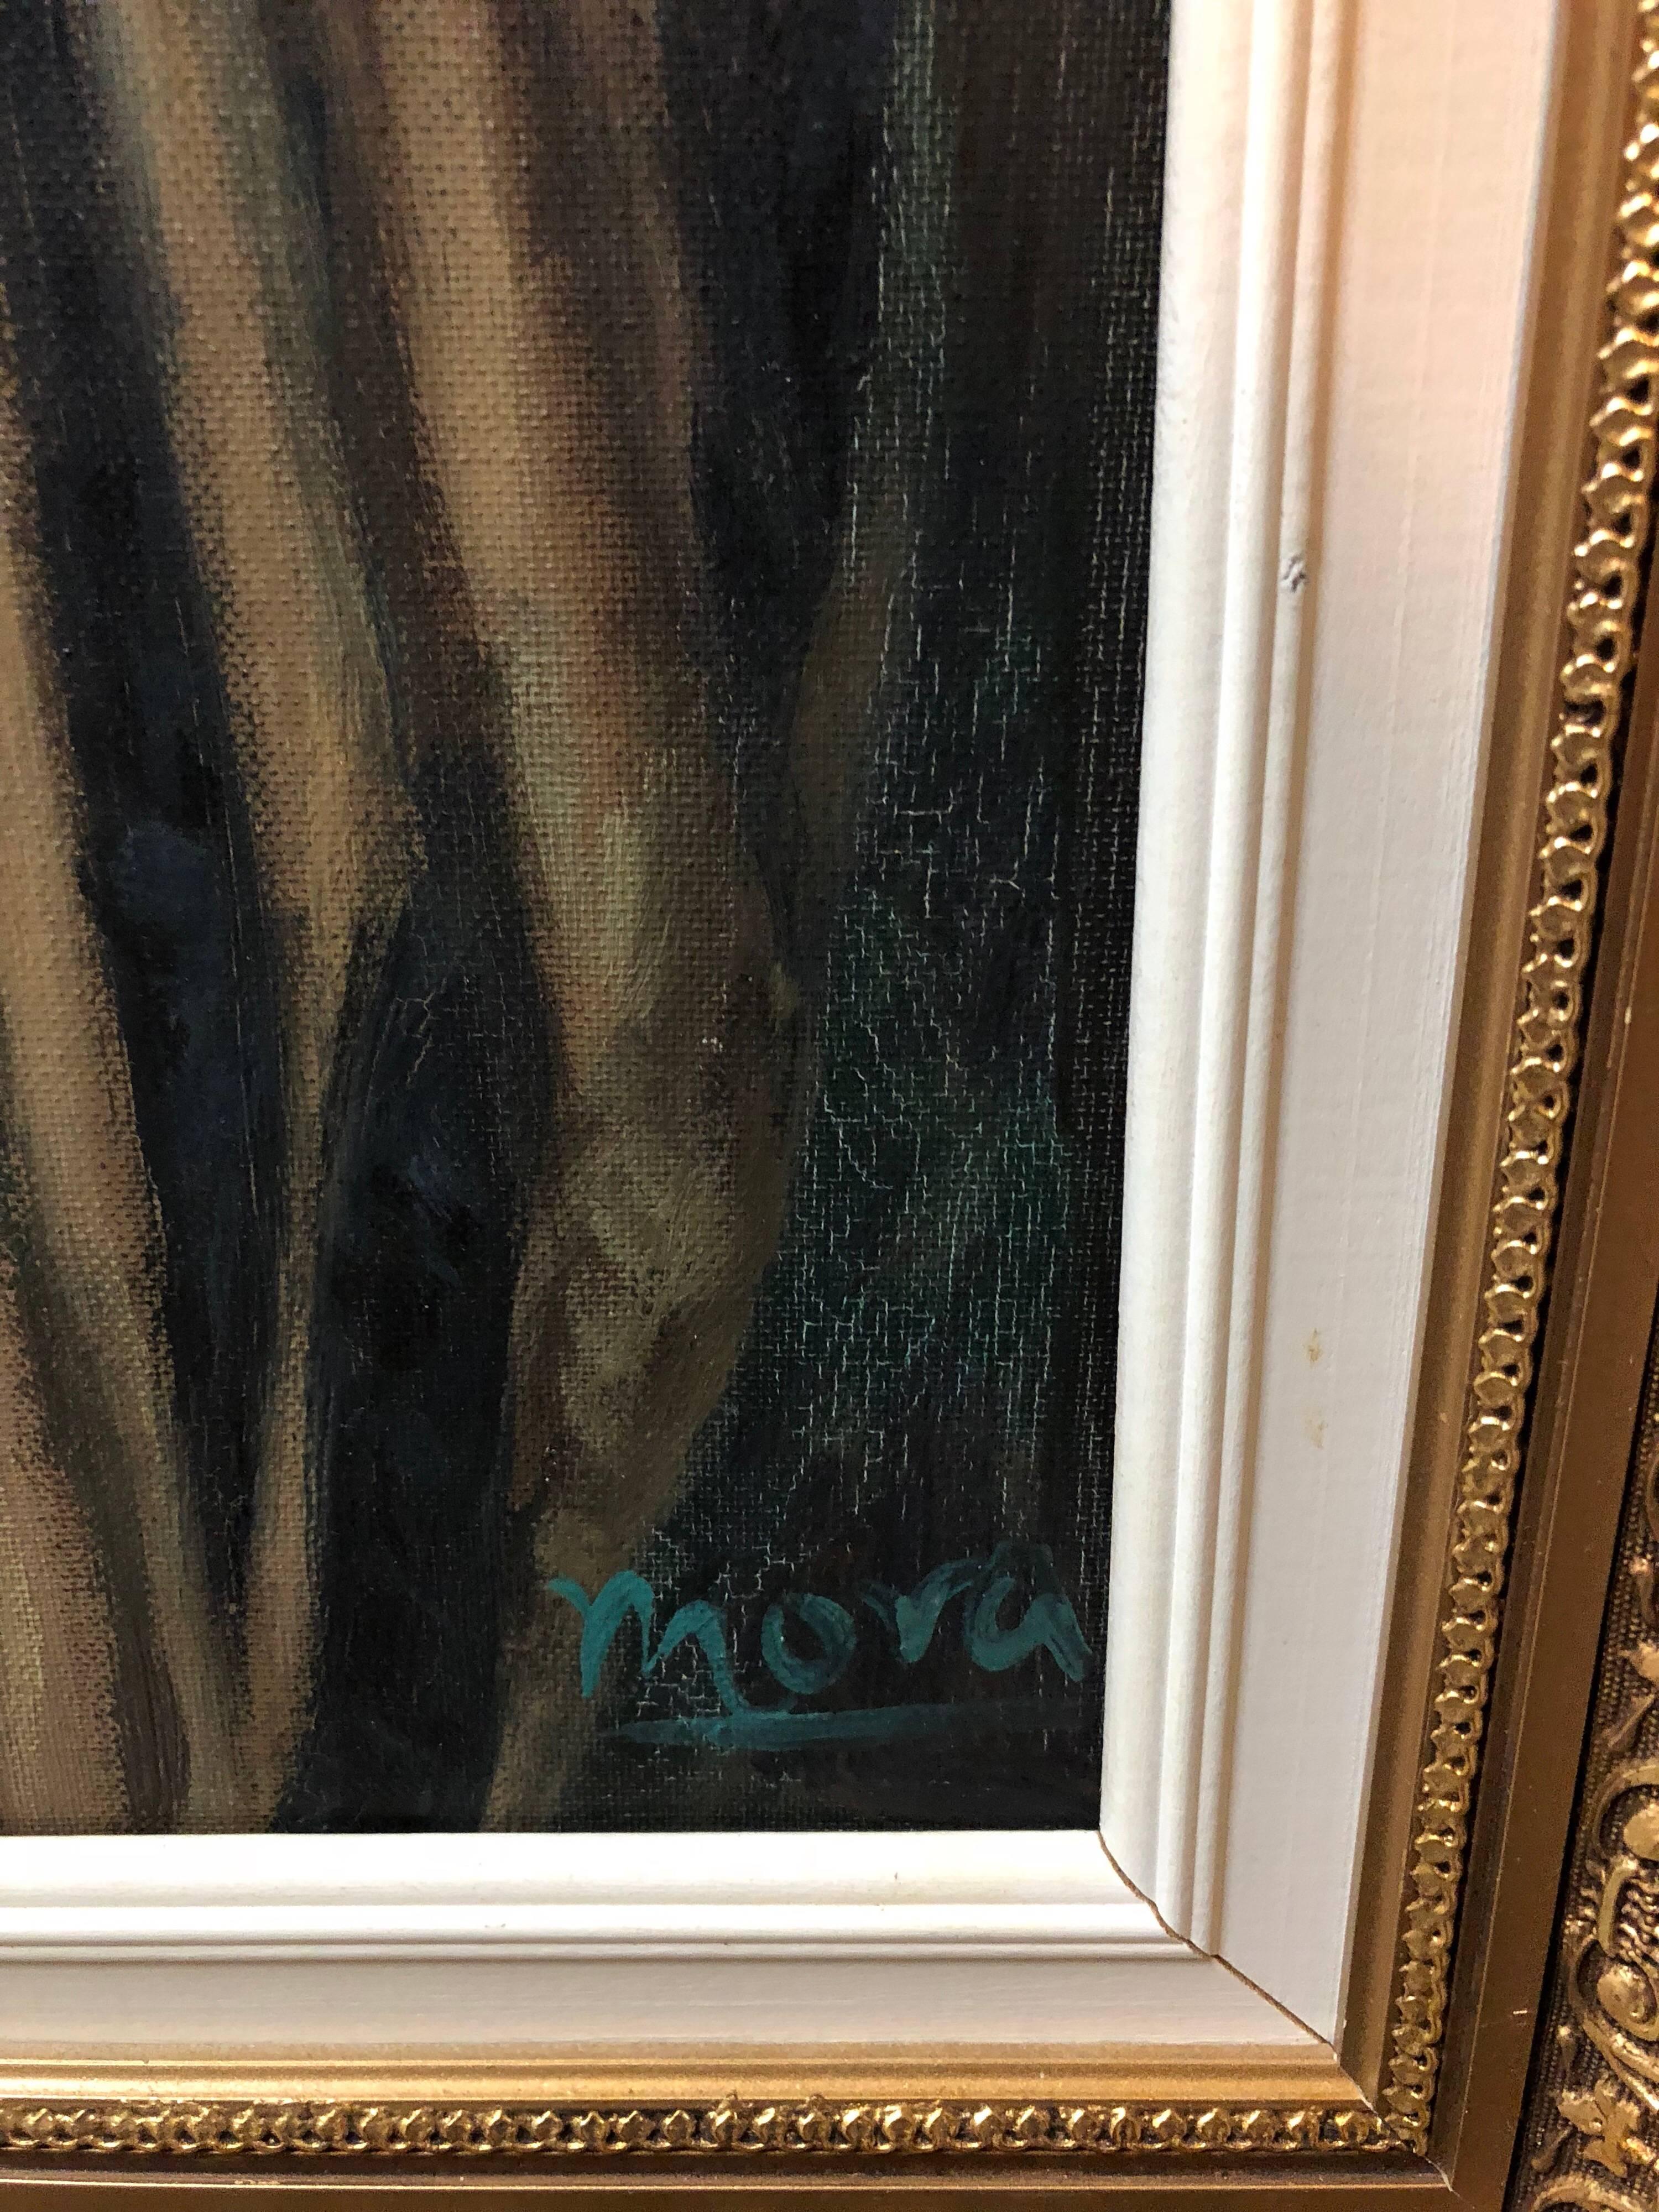 Rare peinture à l'huile moderniste d'un érudit judaïque représentant un lapin dans un Synagogue, signée Mora - Artisanat Painting par Unknown